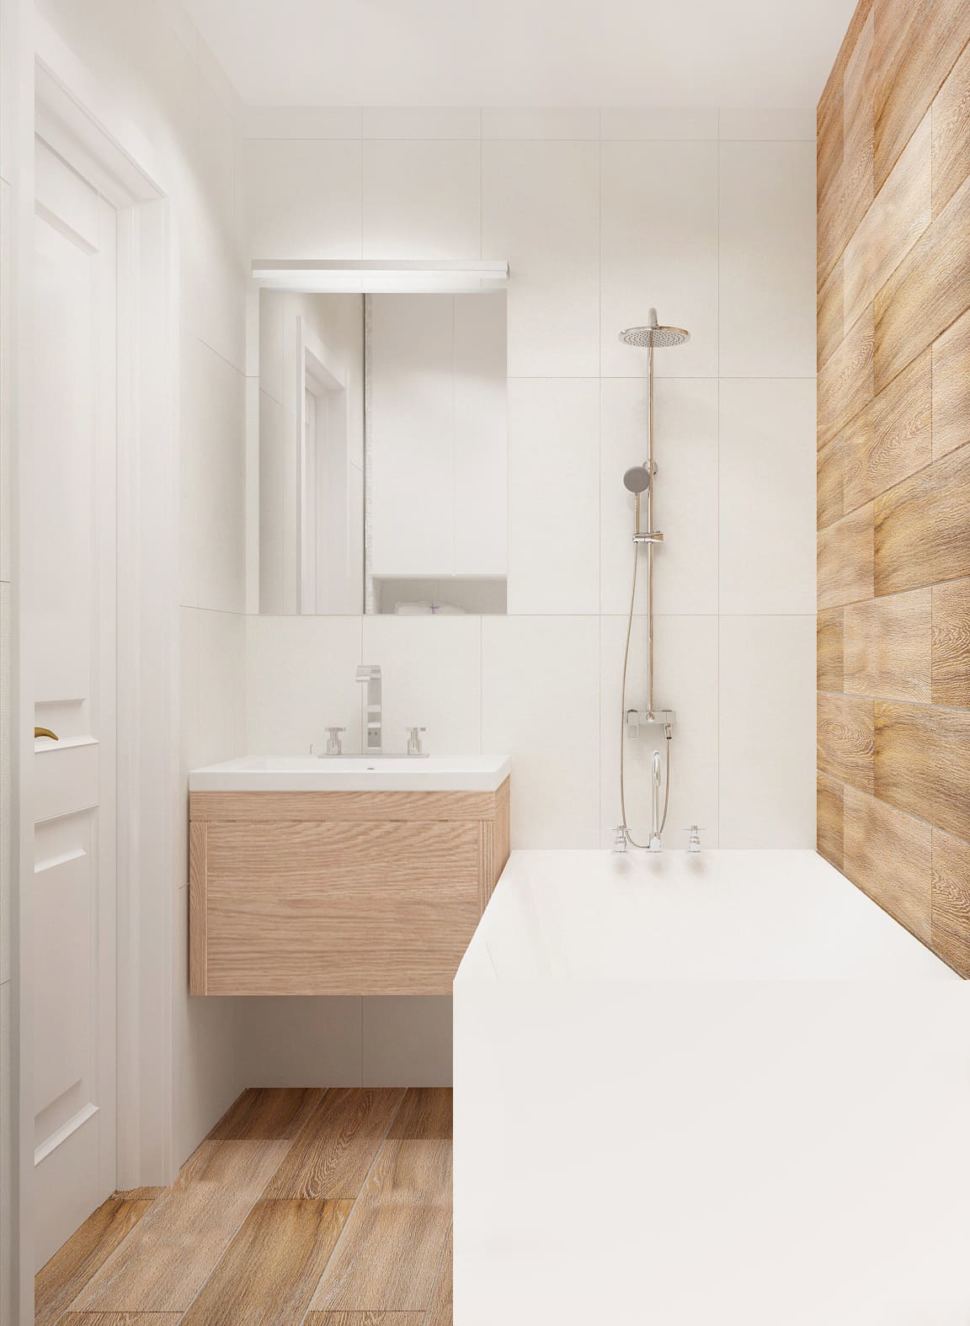 Визуализация ванной комнаты 3 кв.м в древесных и белых оттенках, ванная, душ, зеркало, белая раковина, плитка